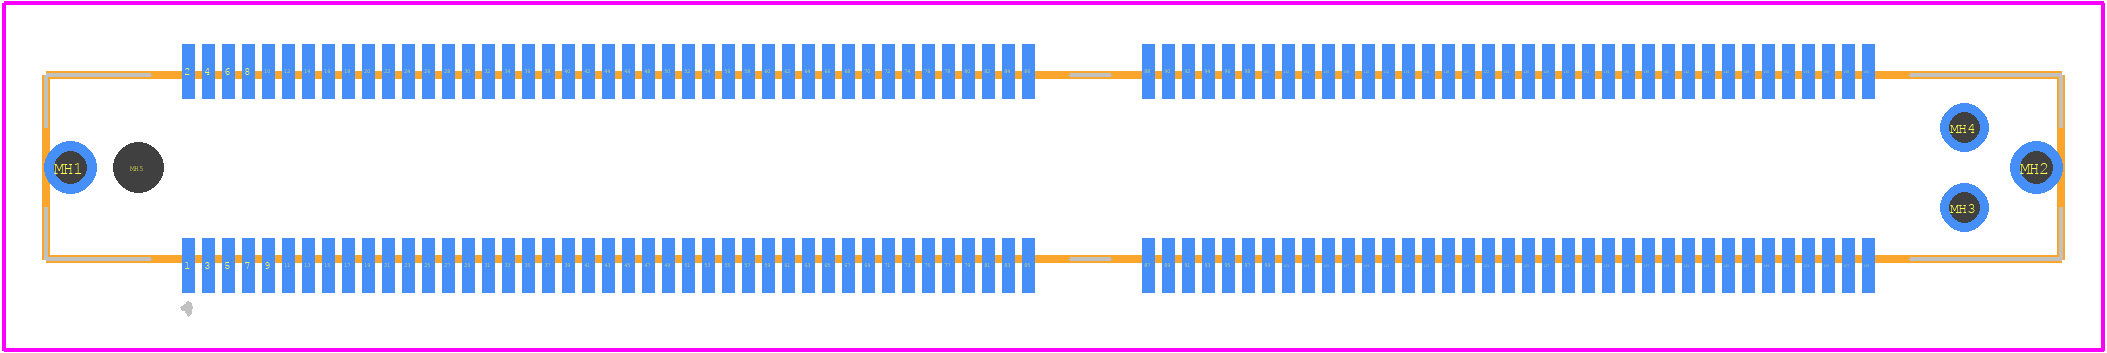 MEC5-080-01-L-DV-W1-K-TR - SAMTEC PCB footprint - Other - Other - MEC5-080-01-L-DV-W1-K-TR-1